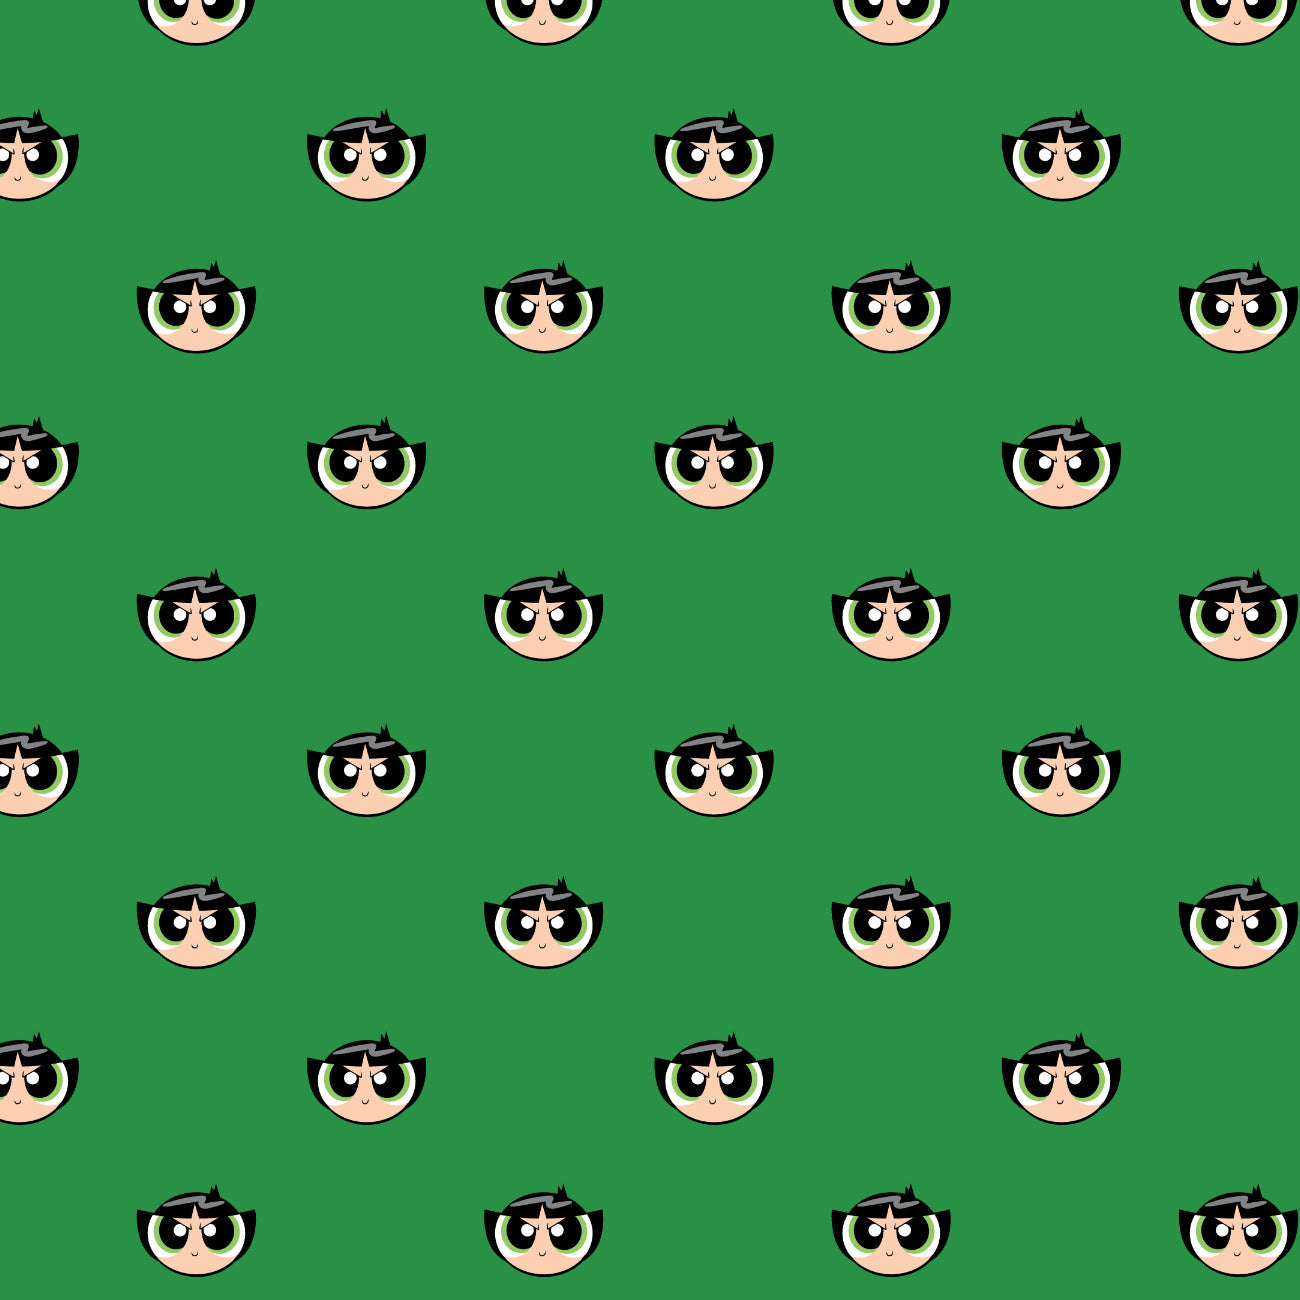 Powerpuff Girls Collection II-Buttercup Face-Green-100% Cotton 23910302-01